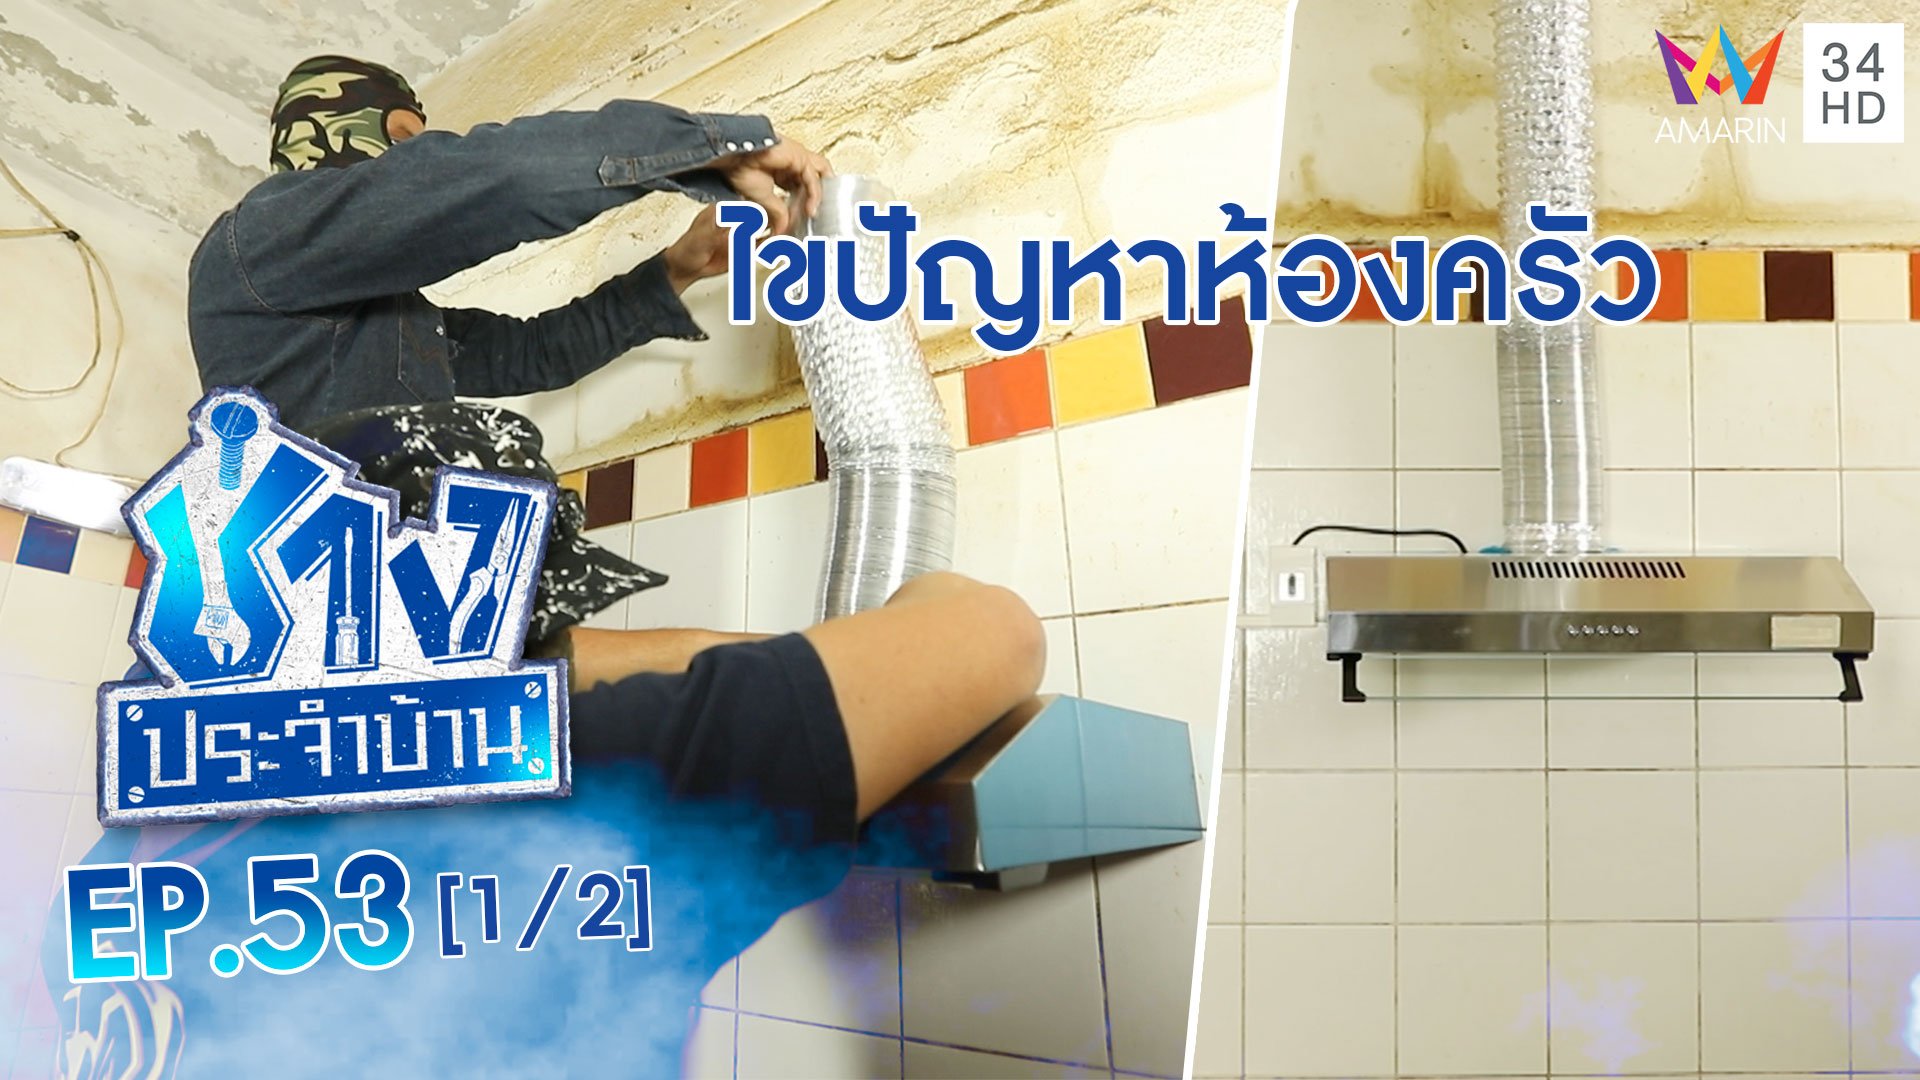 ช่างประจำบ้าน | EP.53 ไขปัญหาห้องครัว ไม่มีจุดระบายอากาศ (1/2) | 30 ม.ค. 64 | AMARIN TVHD34